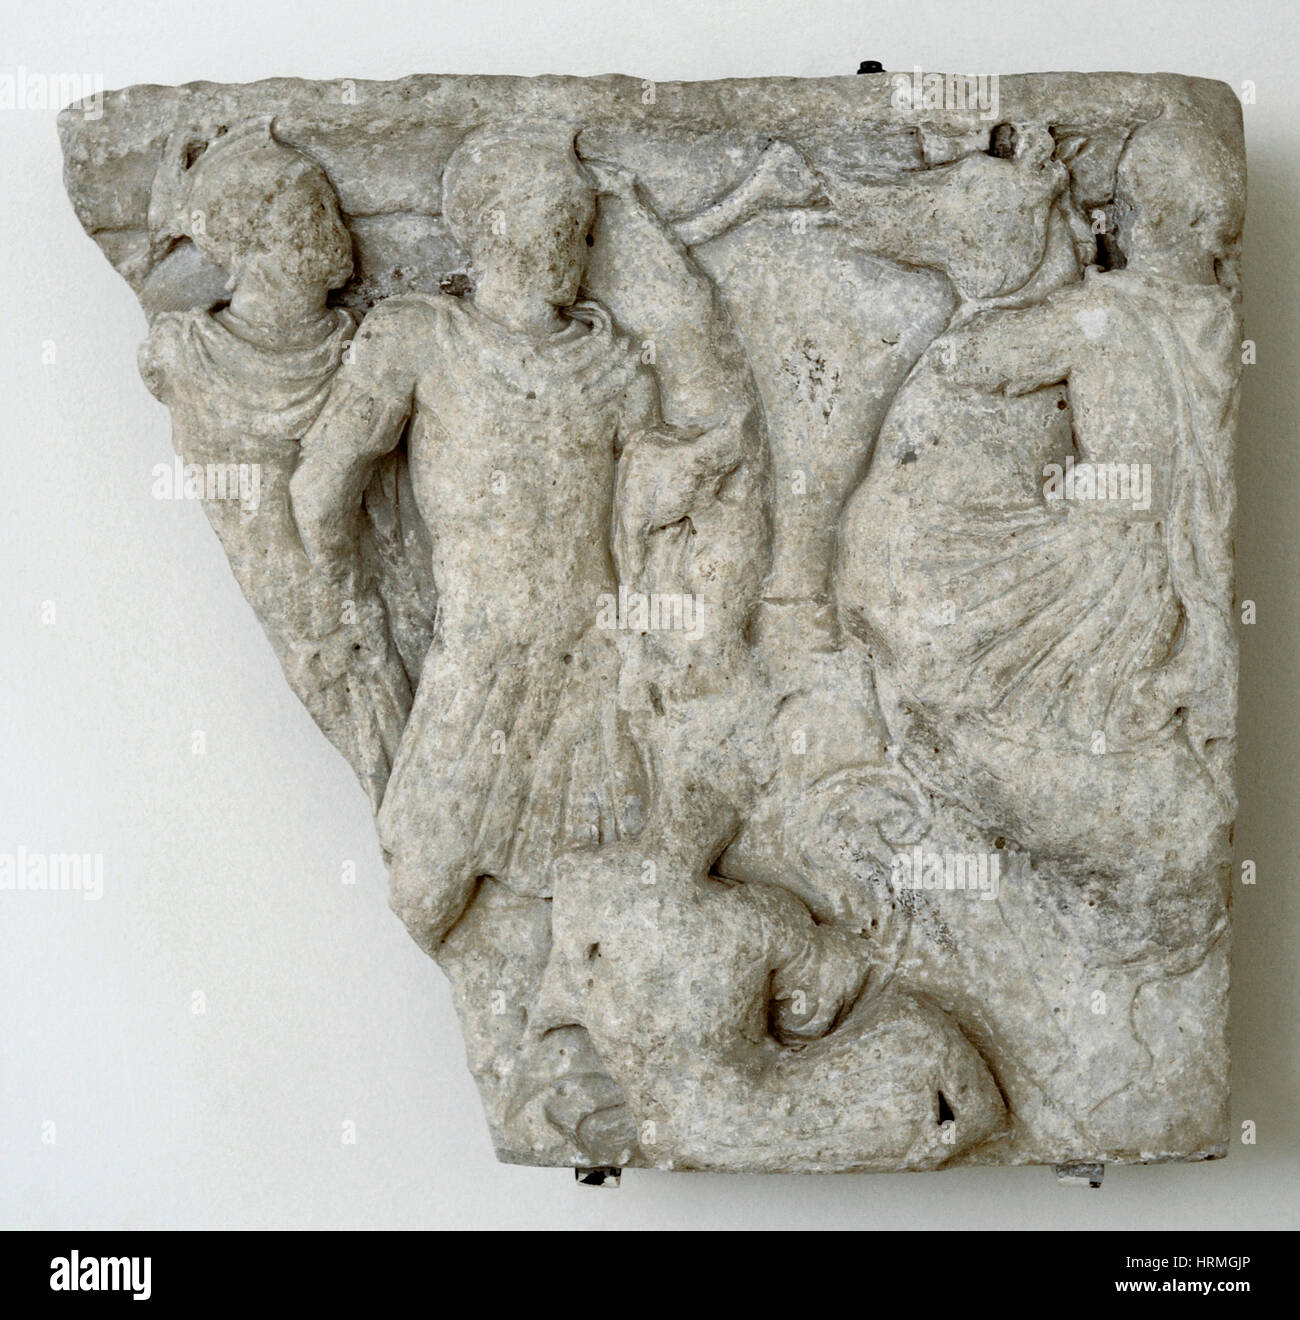 Fragmento del sarcófago con escenas de batalla. Museo Arqueológico Nacional. Tarragona. Cataluña, España. Foto de stock